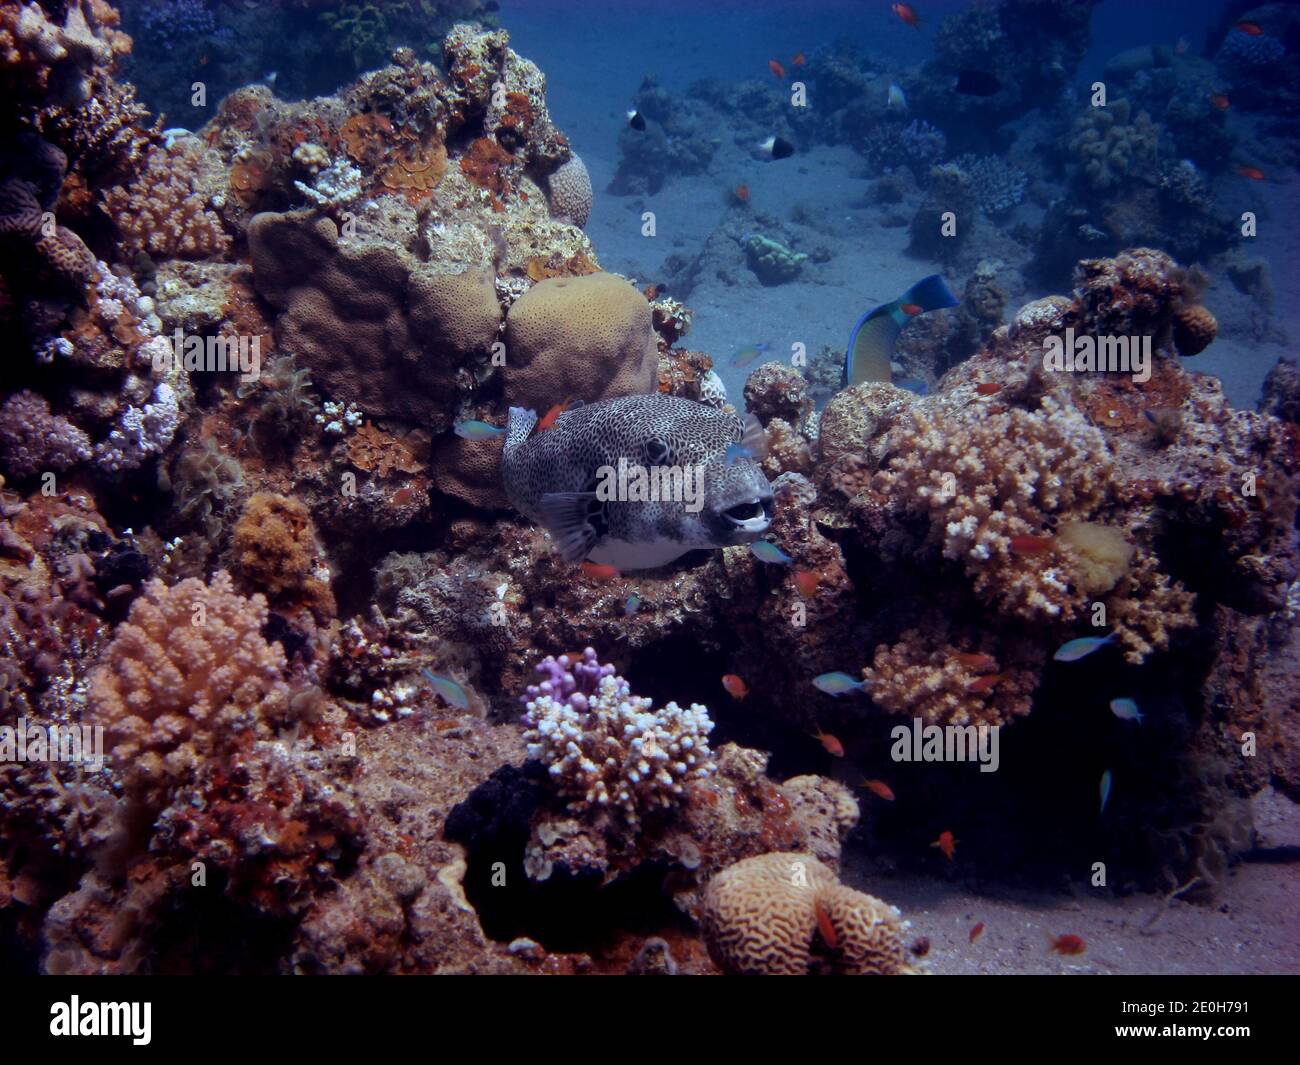 kugelfisch schwimmt zwischen korallen im riff Foto de stock